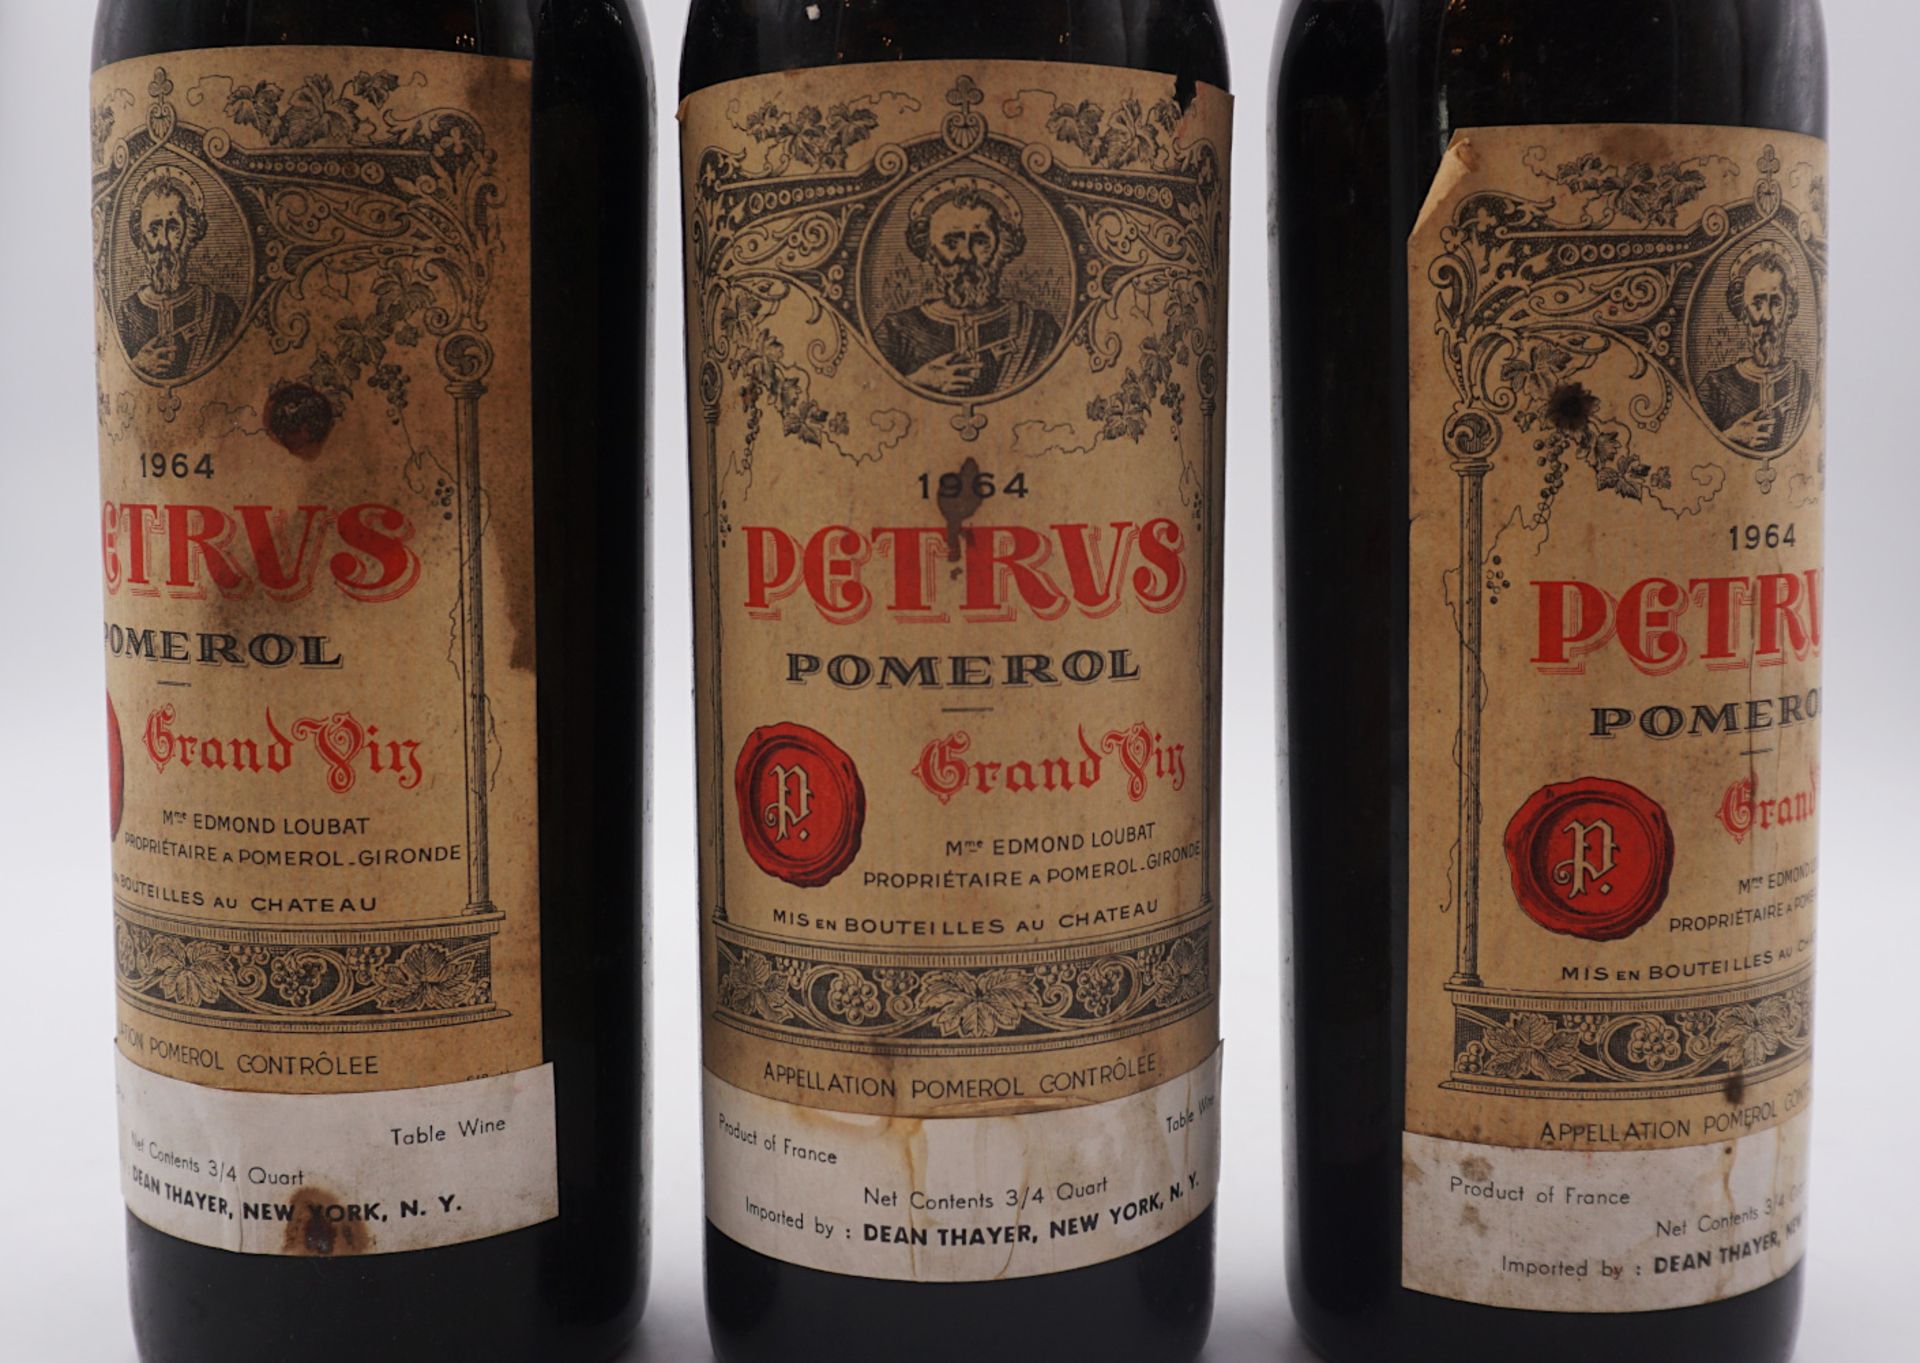 3 Flaschen Petrus Pomerol Grand Vin 1964 mit Label Dean Thayer New York Importeur, Fü - Bild 3 aus 3